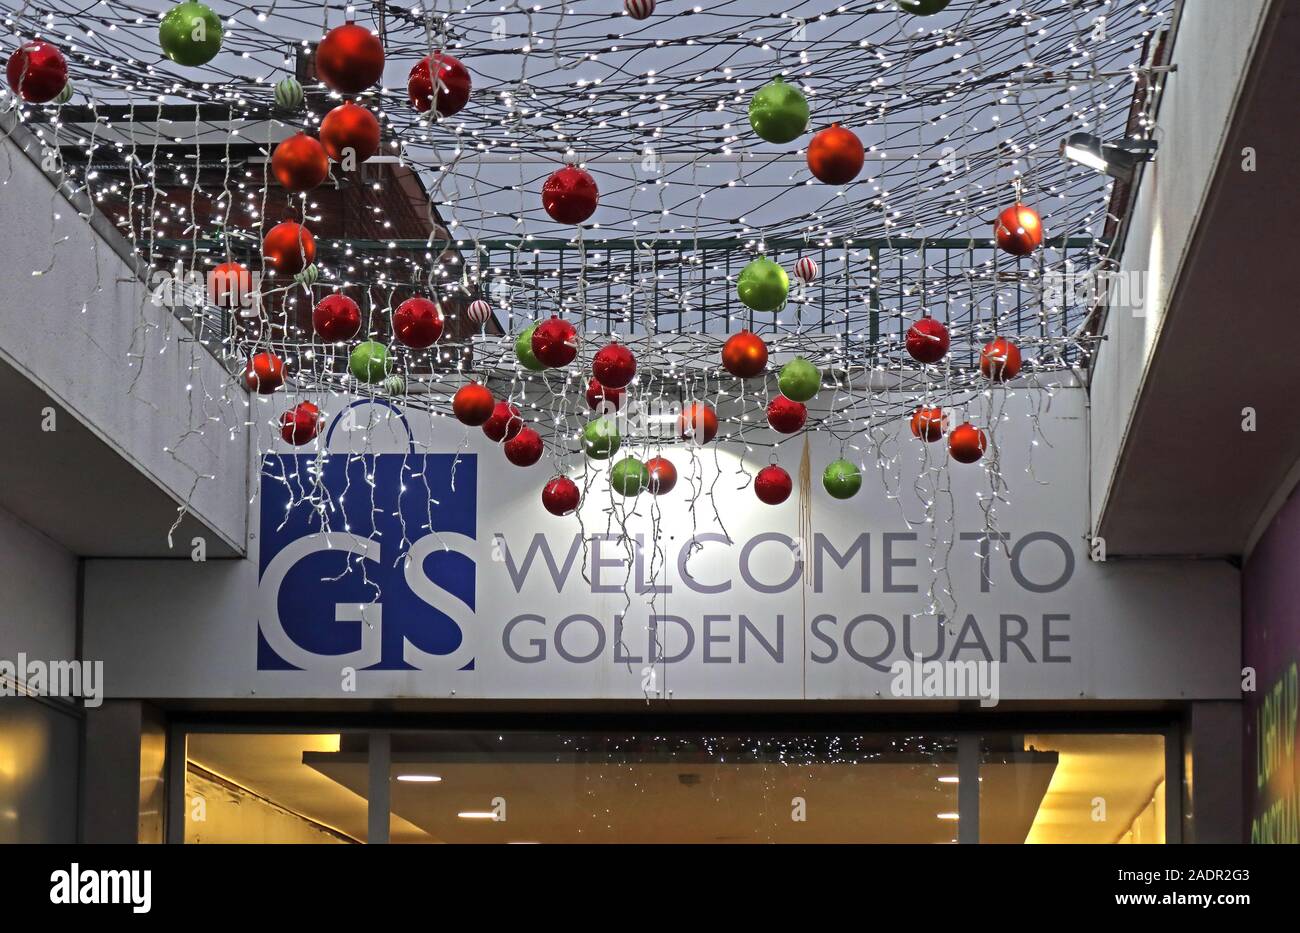 GS, Willkommen auf dem Golden Square, Weihnachtseinkäufe, Golden Square, Warrington, Cheshire, England, Großbritannien Stockfoto